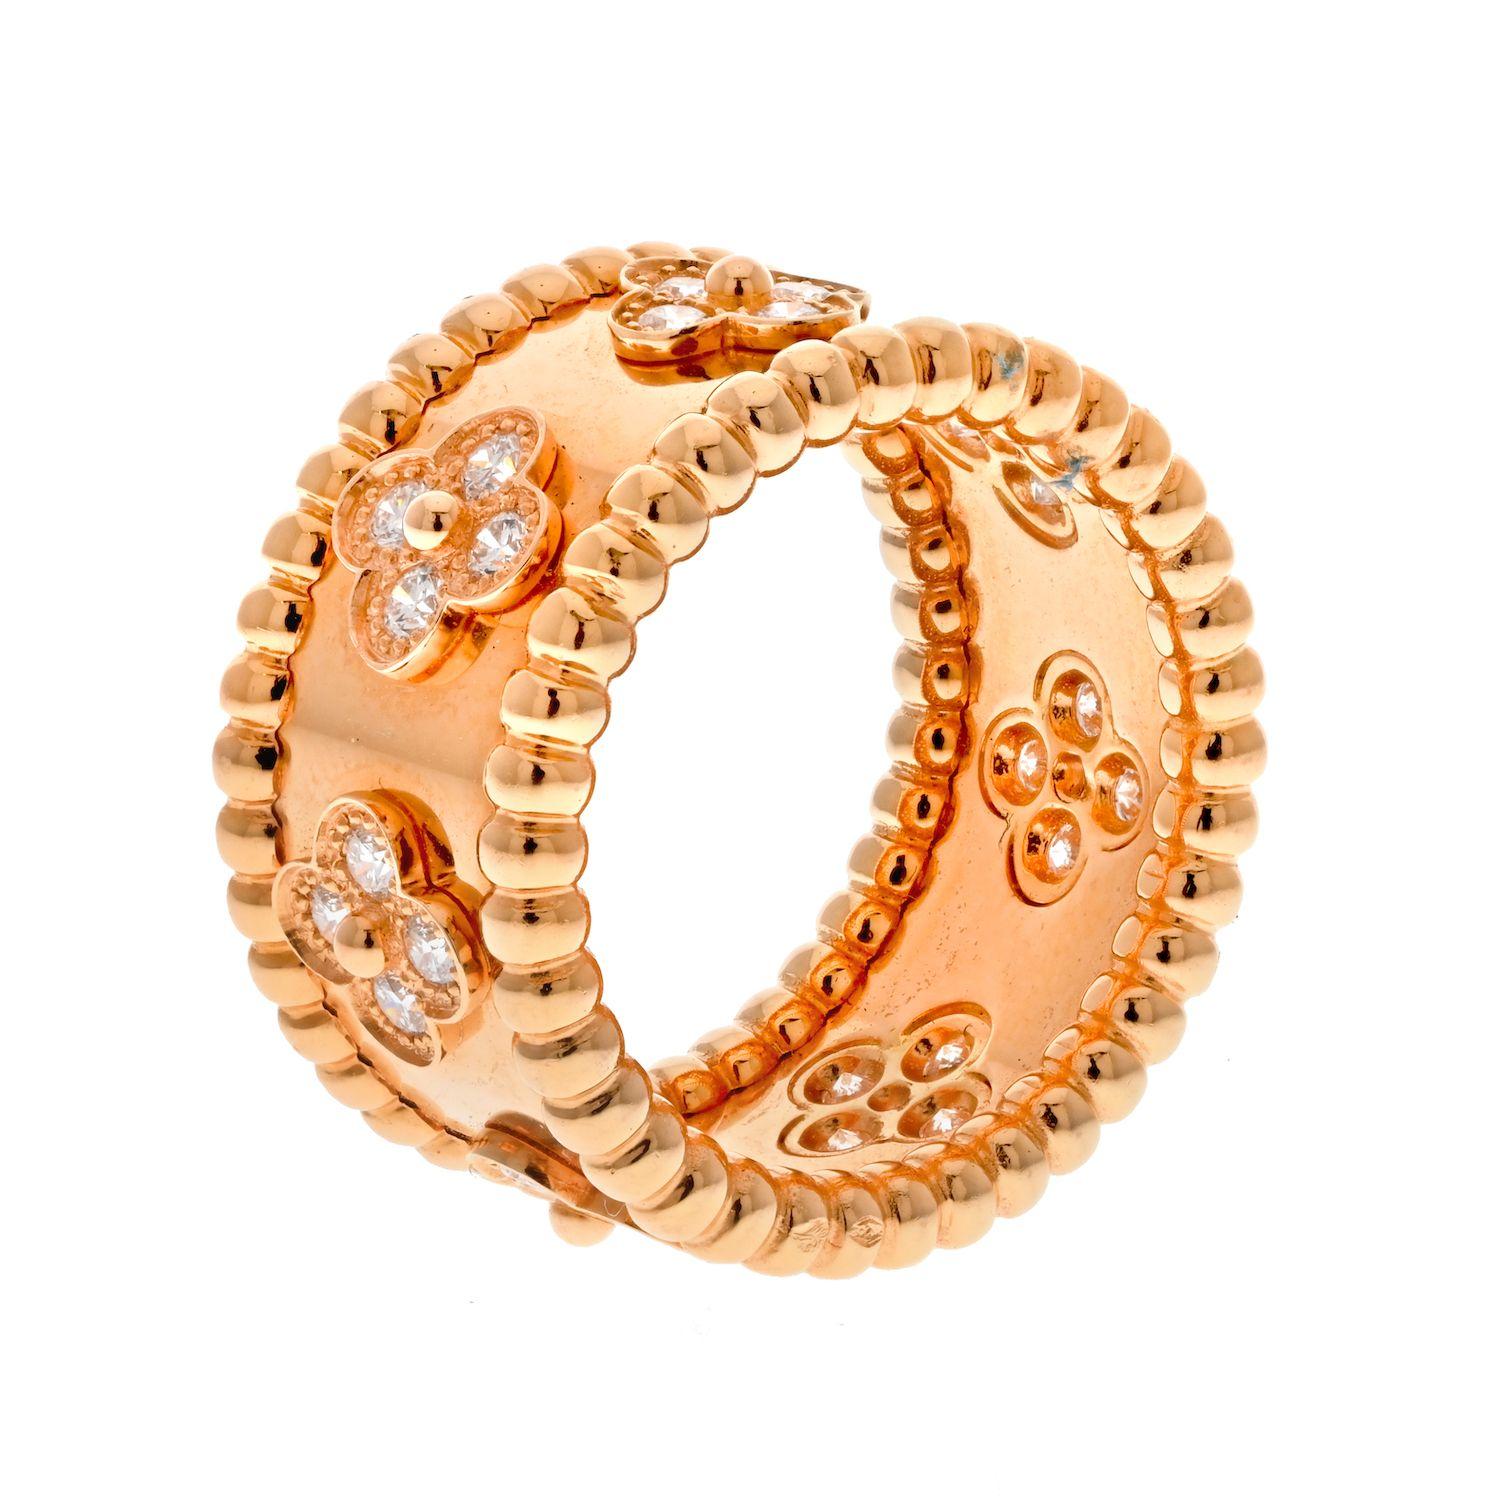 Der Ring Perlee von Van Cleef & Arpels ist ein zeitloses Schmuckstück. Dieser aus 18 Karat Gelbgold gefertigte und mit funkelnden Diamanten besetzte Ring ist ein wahrer Blickfang. Mit seinem klassischen Design wird er sicher viele Jahre lang ein